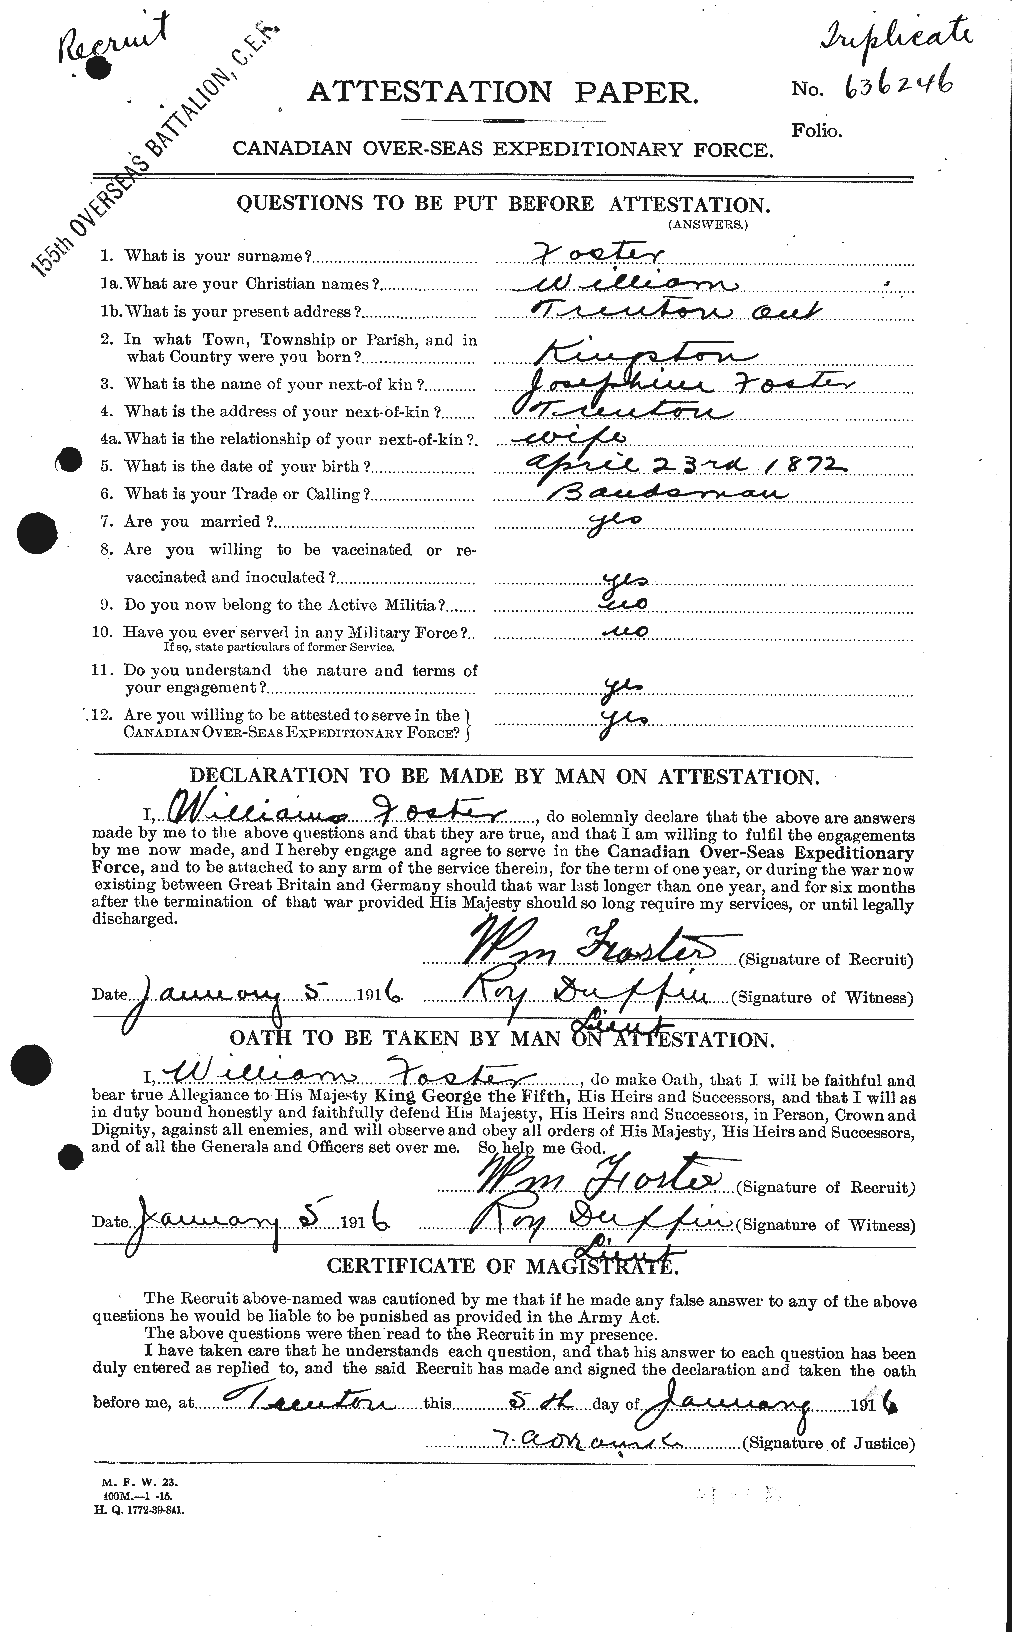 Dossiers du Personnel de la Première Guerre mondiale - CEC 328723a